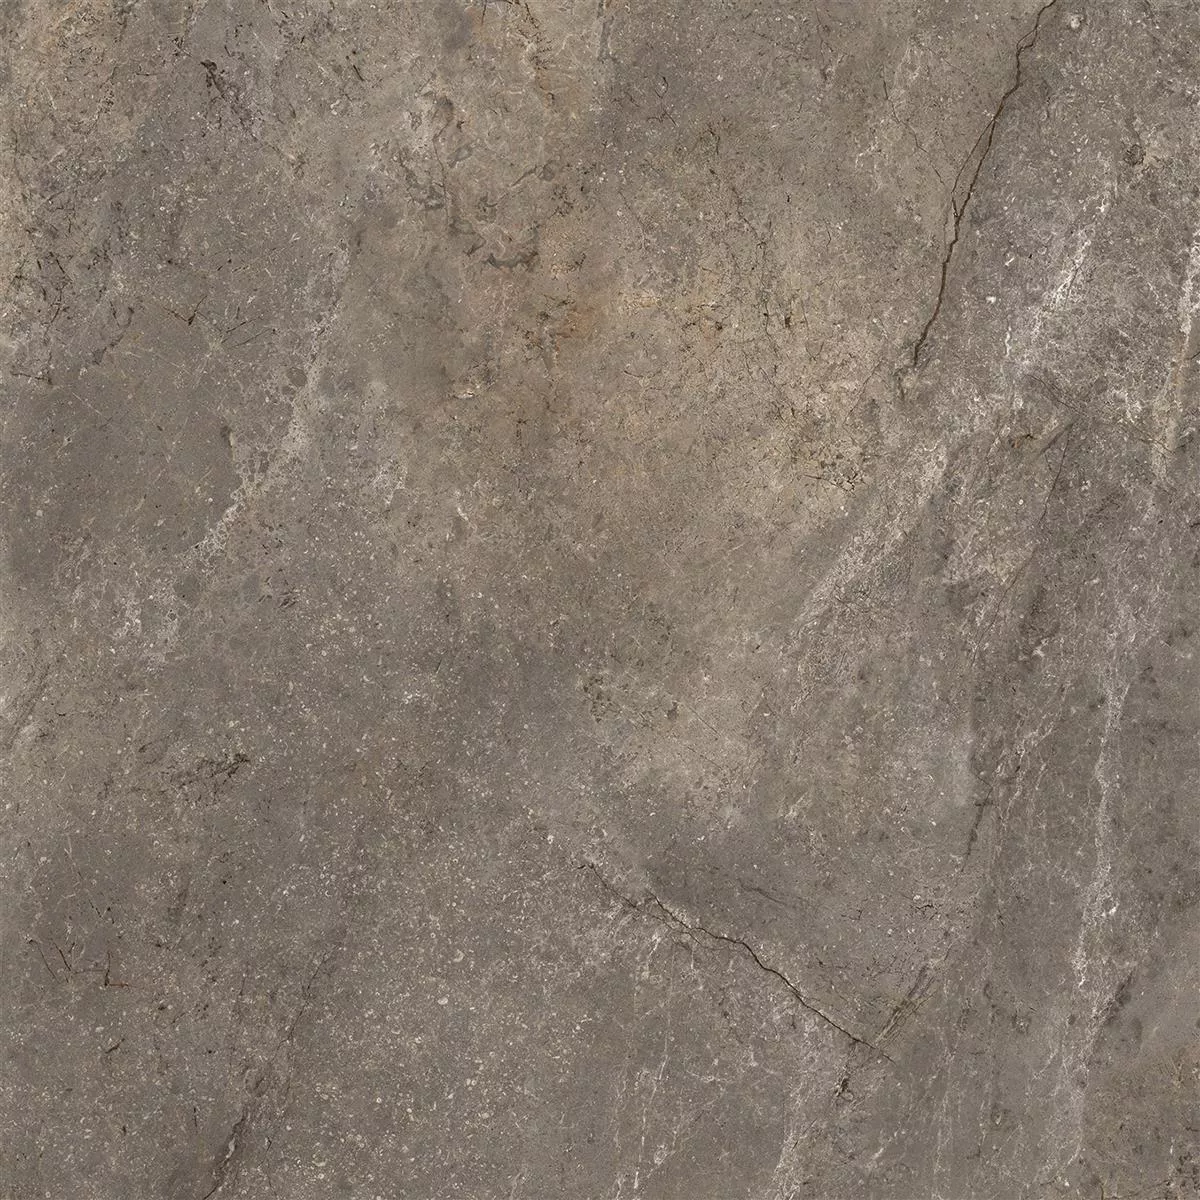 Πρότυπο από Πλακάκια Δαπέδου Pangea Μαρμάρινη Όψη Αμεμπτος Mokka 60x60cm